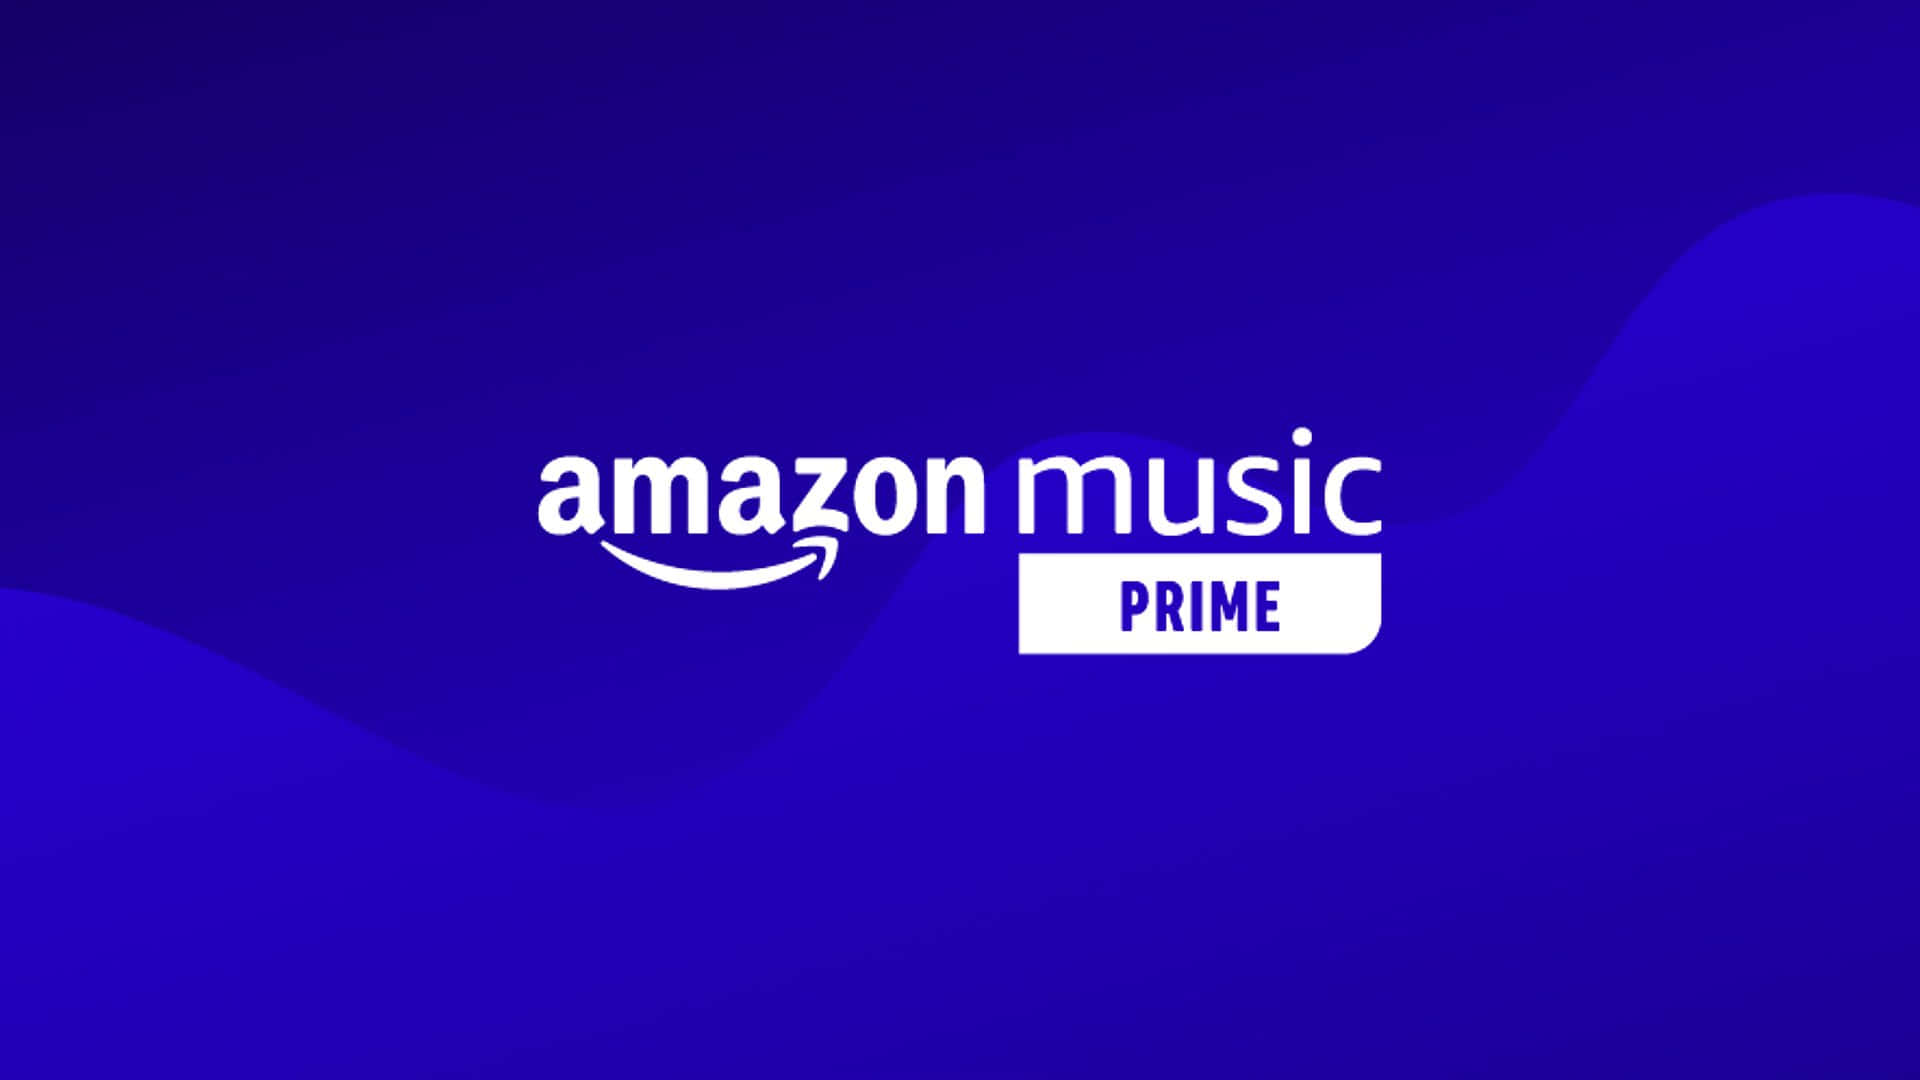 Amazonmusic Prime-logotyp På En Blå Bakgrund